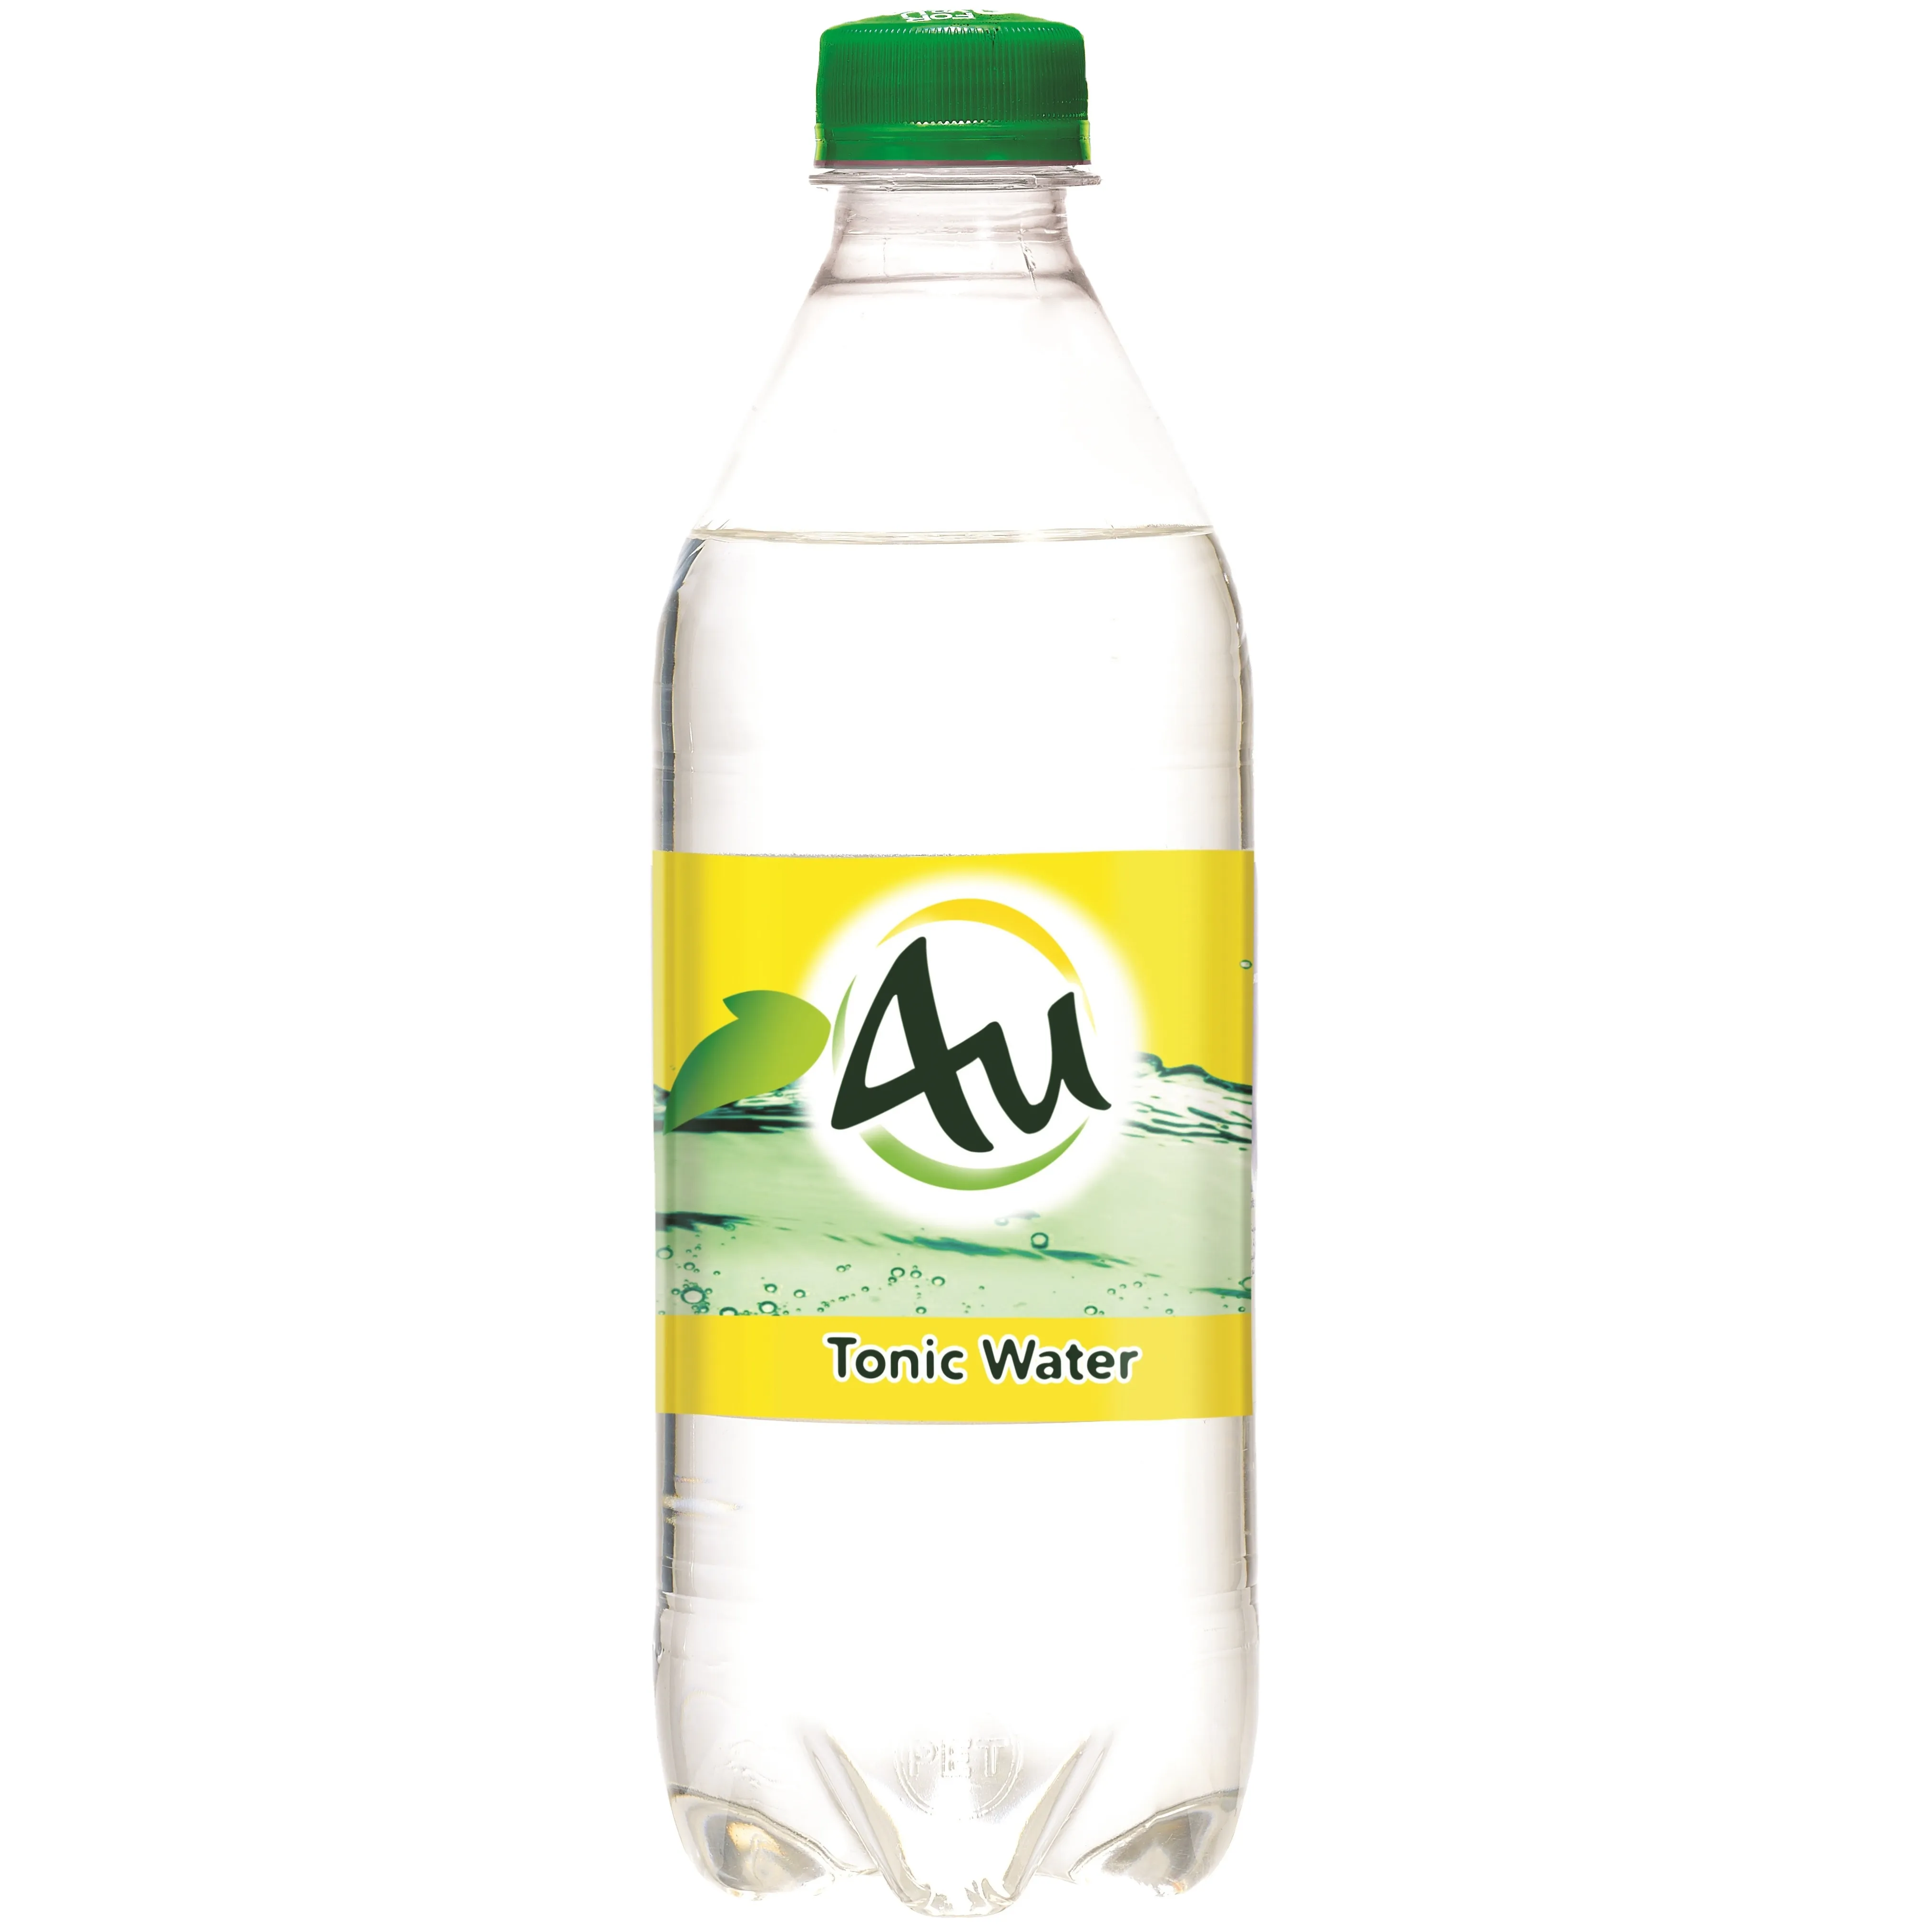 Água fria 4u tônica 500 ml, frasco brilhante carbonizado bebida macia refrescante bebida fresca